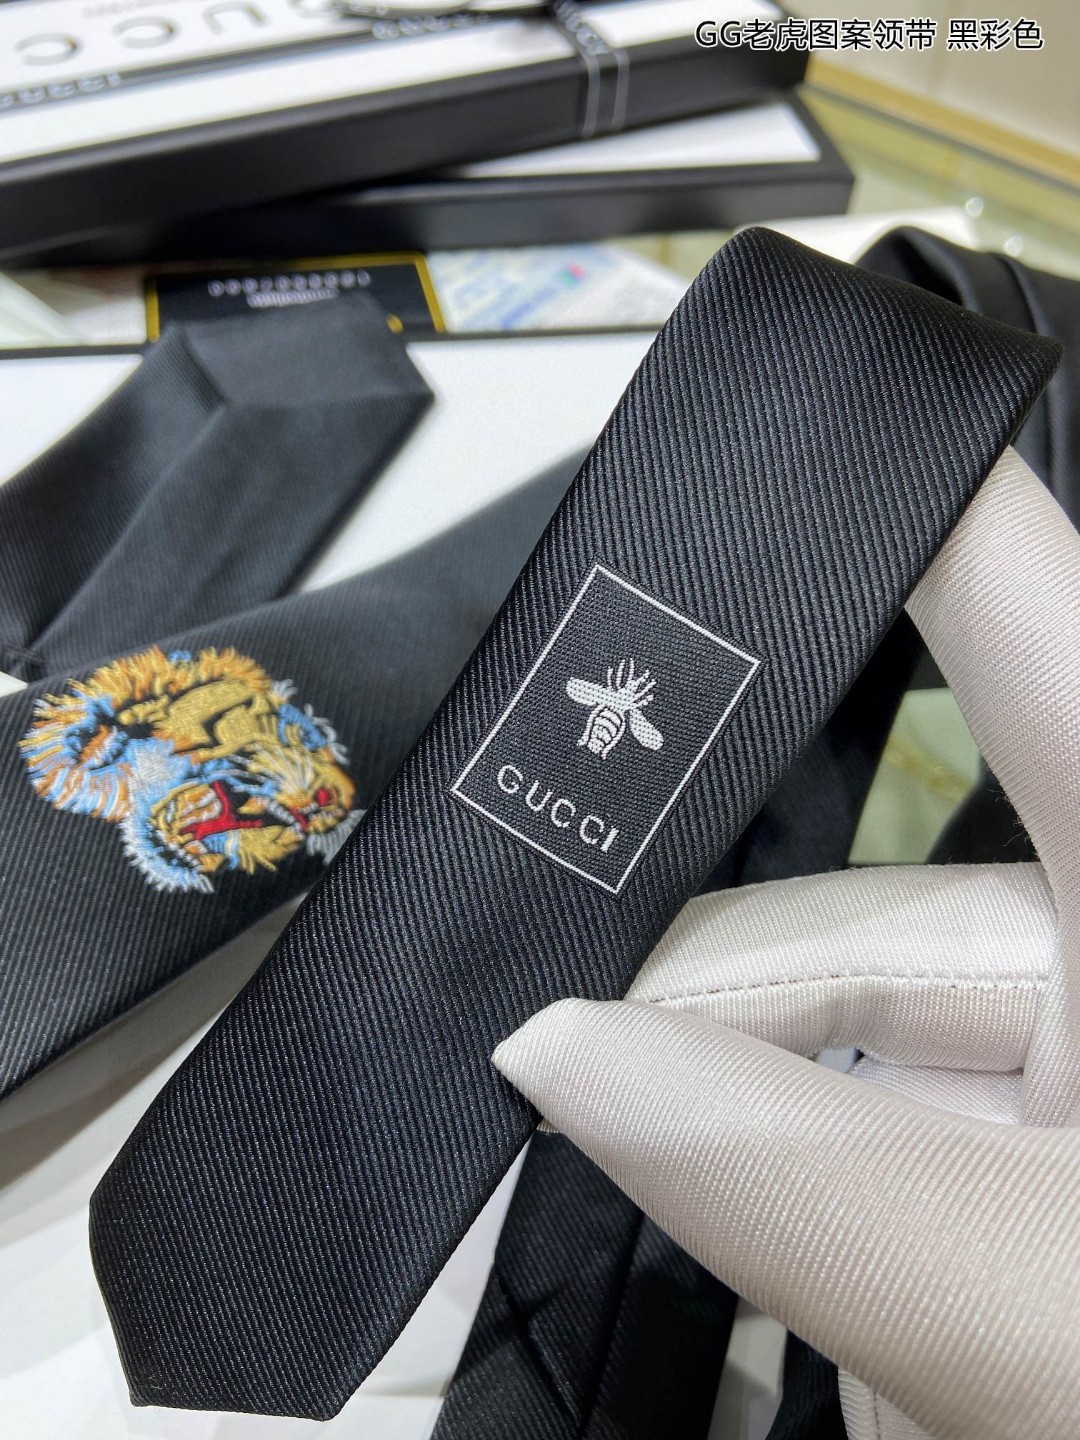 上新特价G家男士领带系列GG老虎图案领带稀有展现精湛手工与时尚优雅的理想选择这款领带将标志性的主题动物小